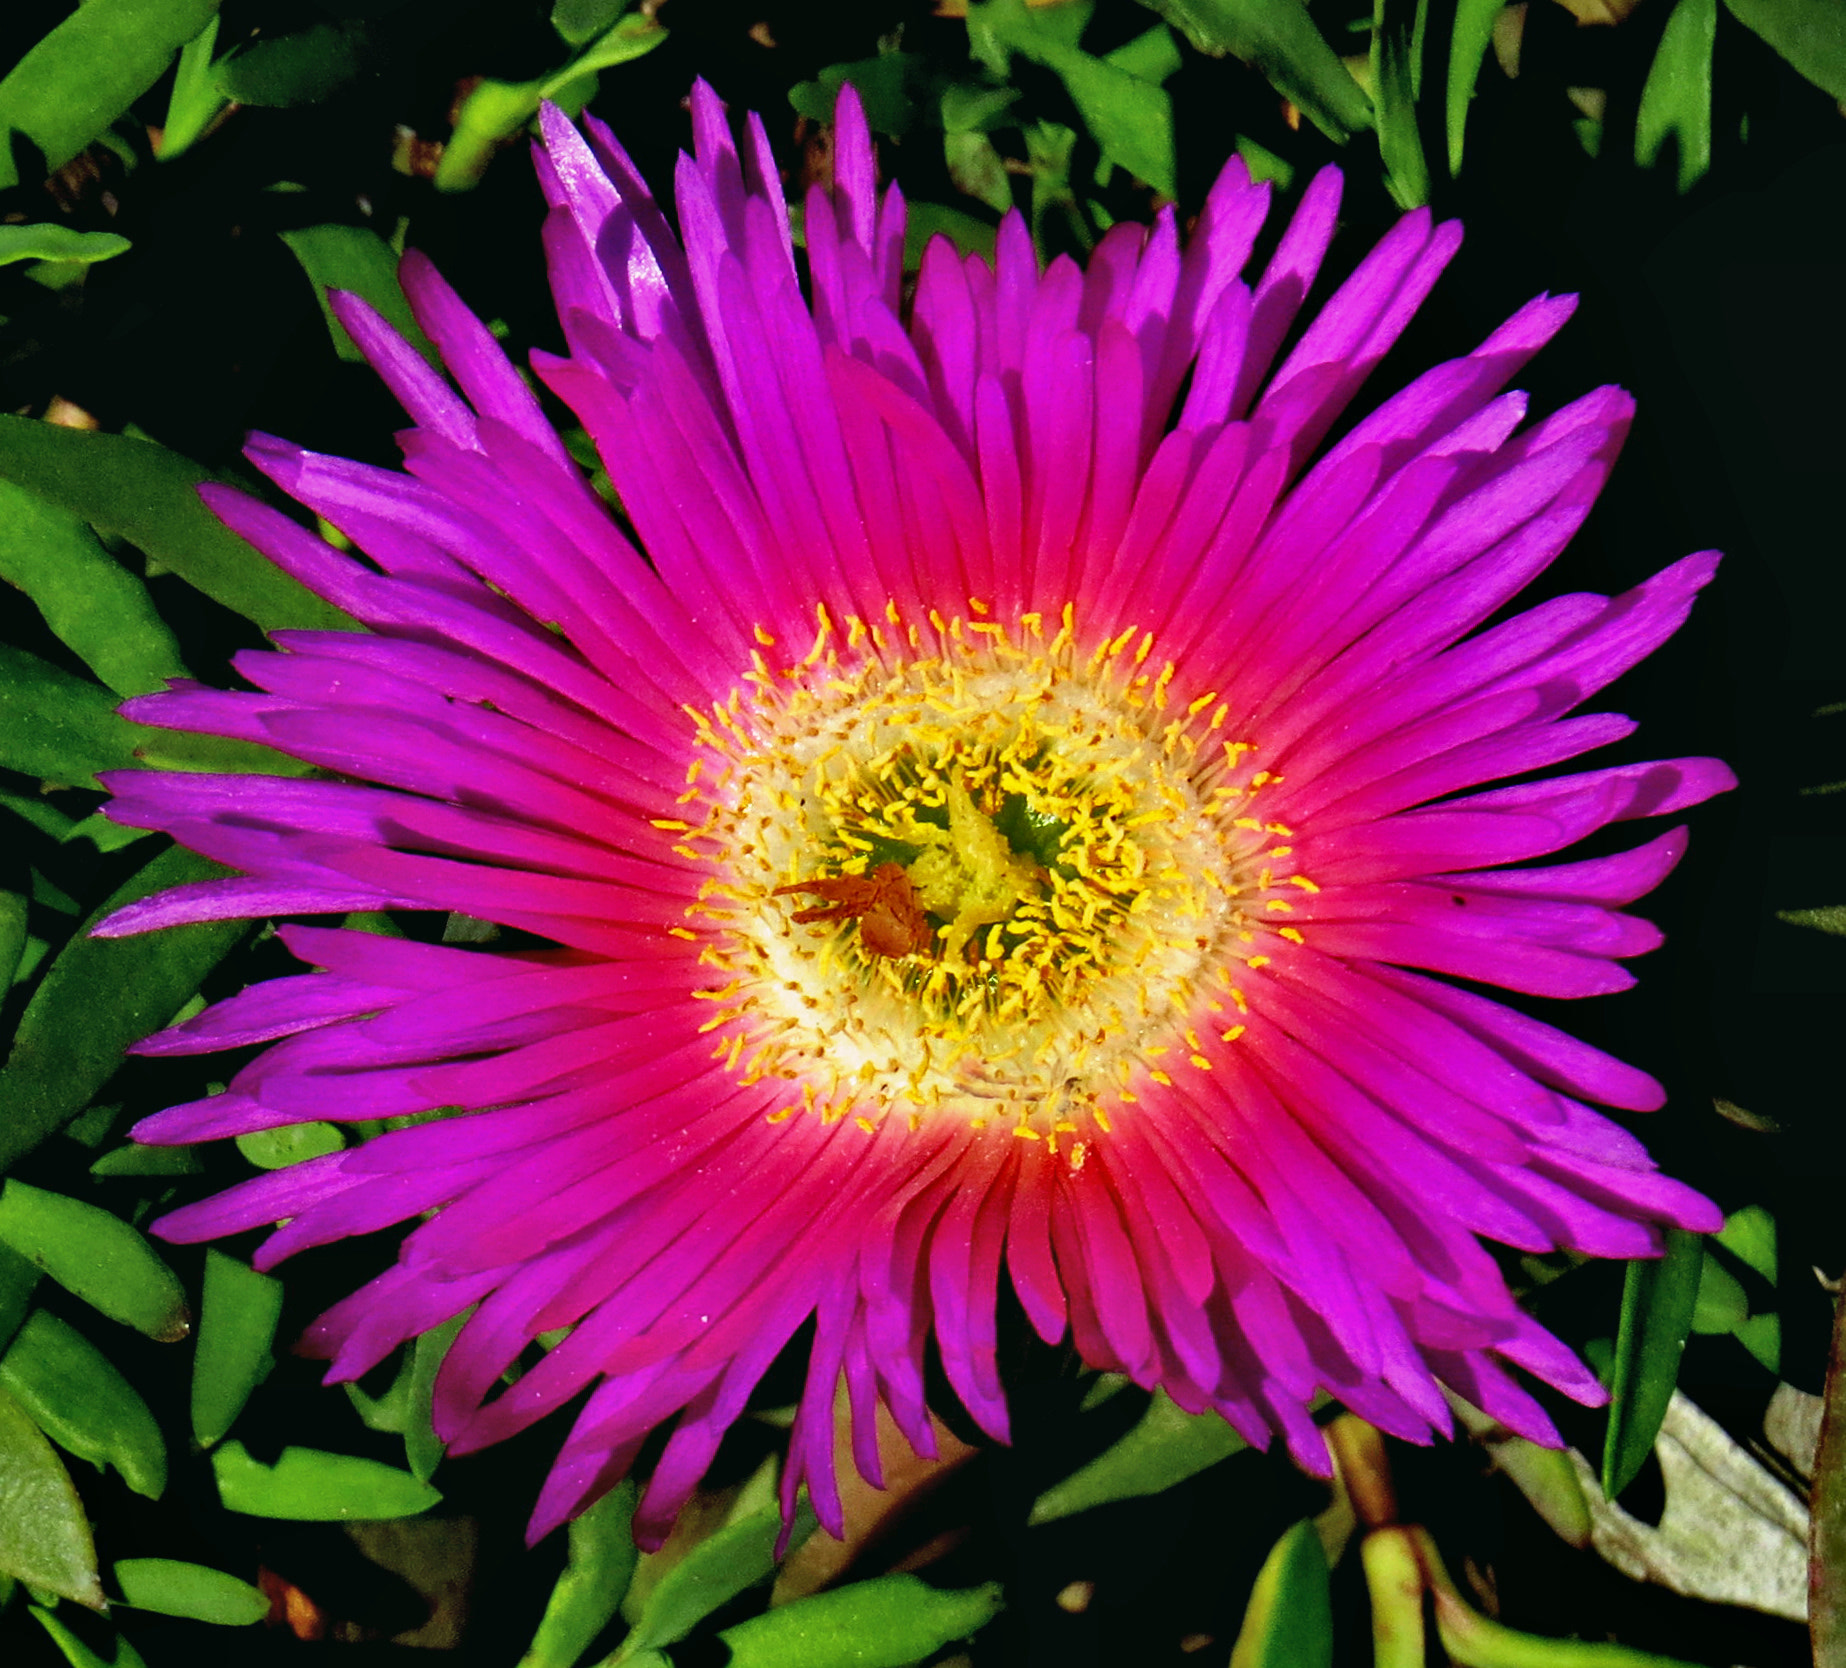 Canon PowerShot SX50 HS sample photo. A purple dandelion flower photography